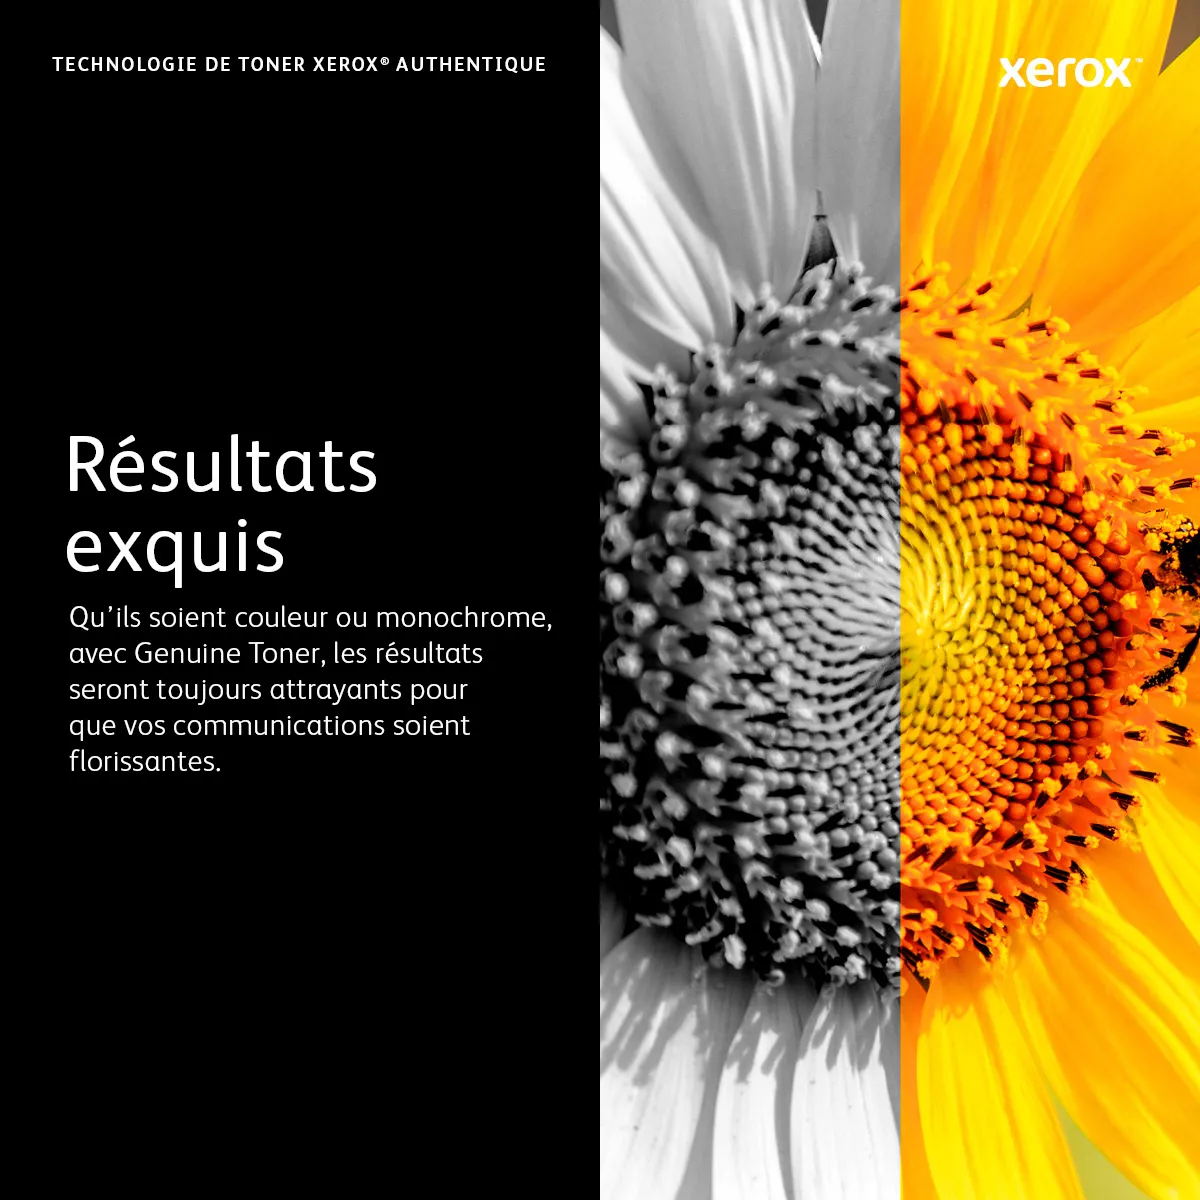 XEROX Toner Jaune standard C400/C405 Xerox - visuel 1 - hello RSE - 